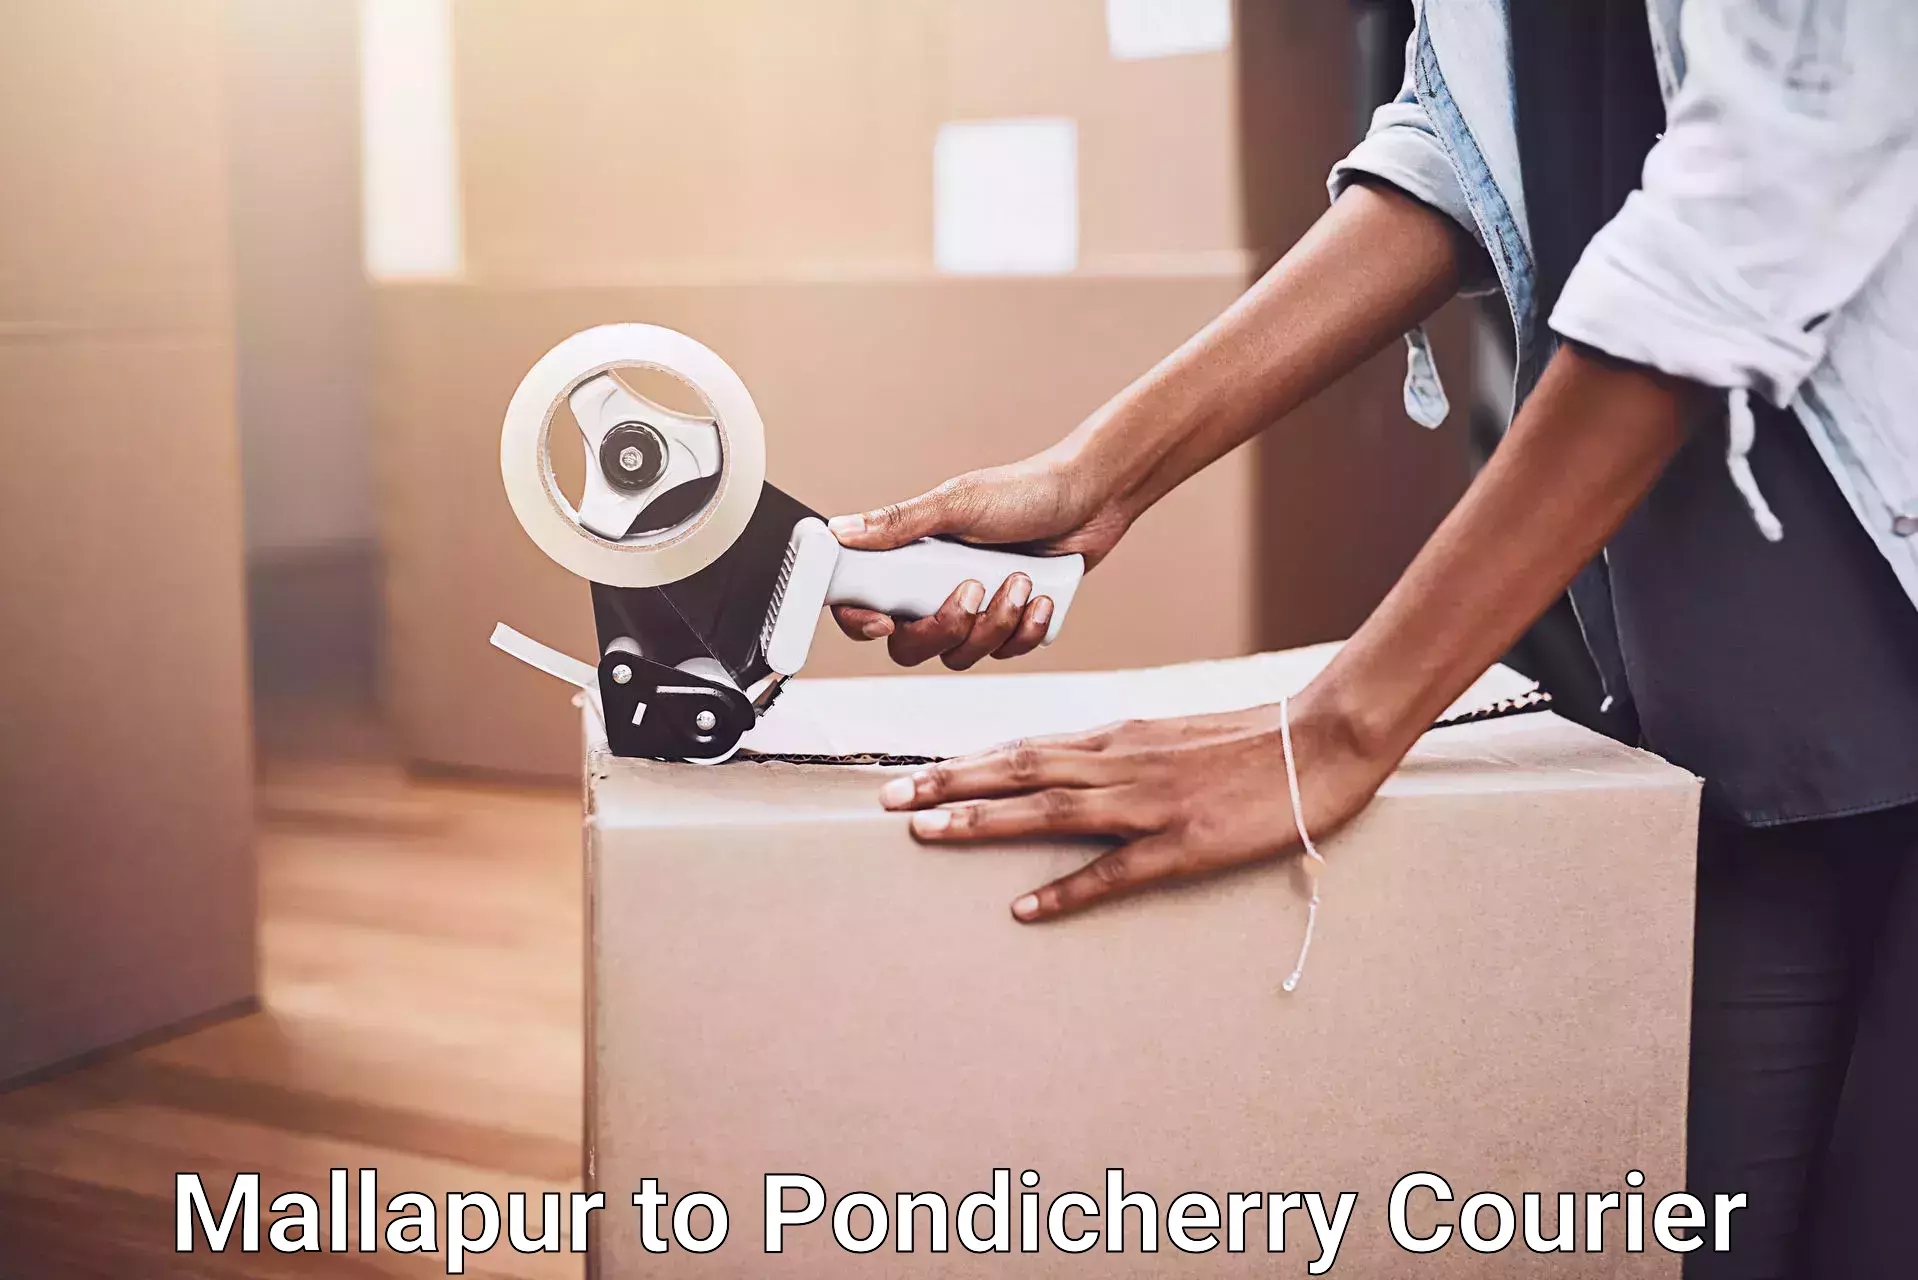 Efficient furniture transport in Mallapur to Pondicherry